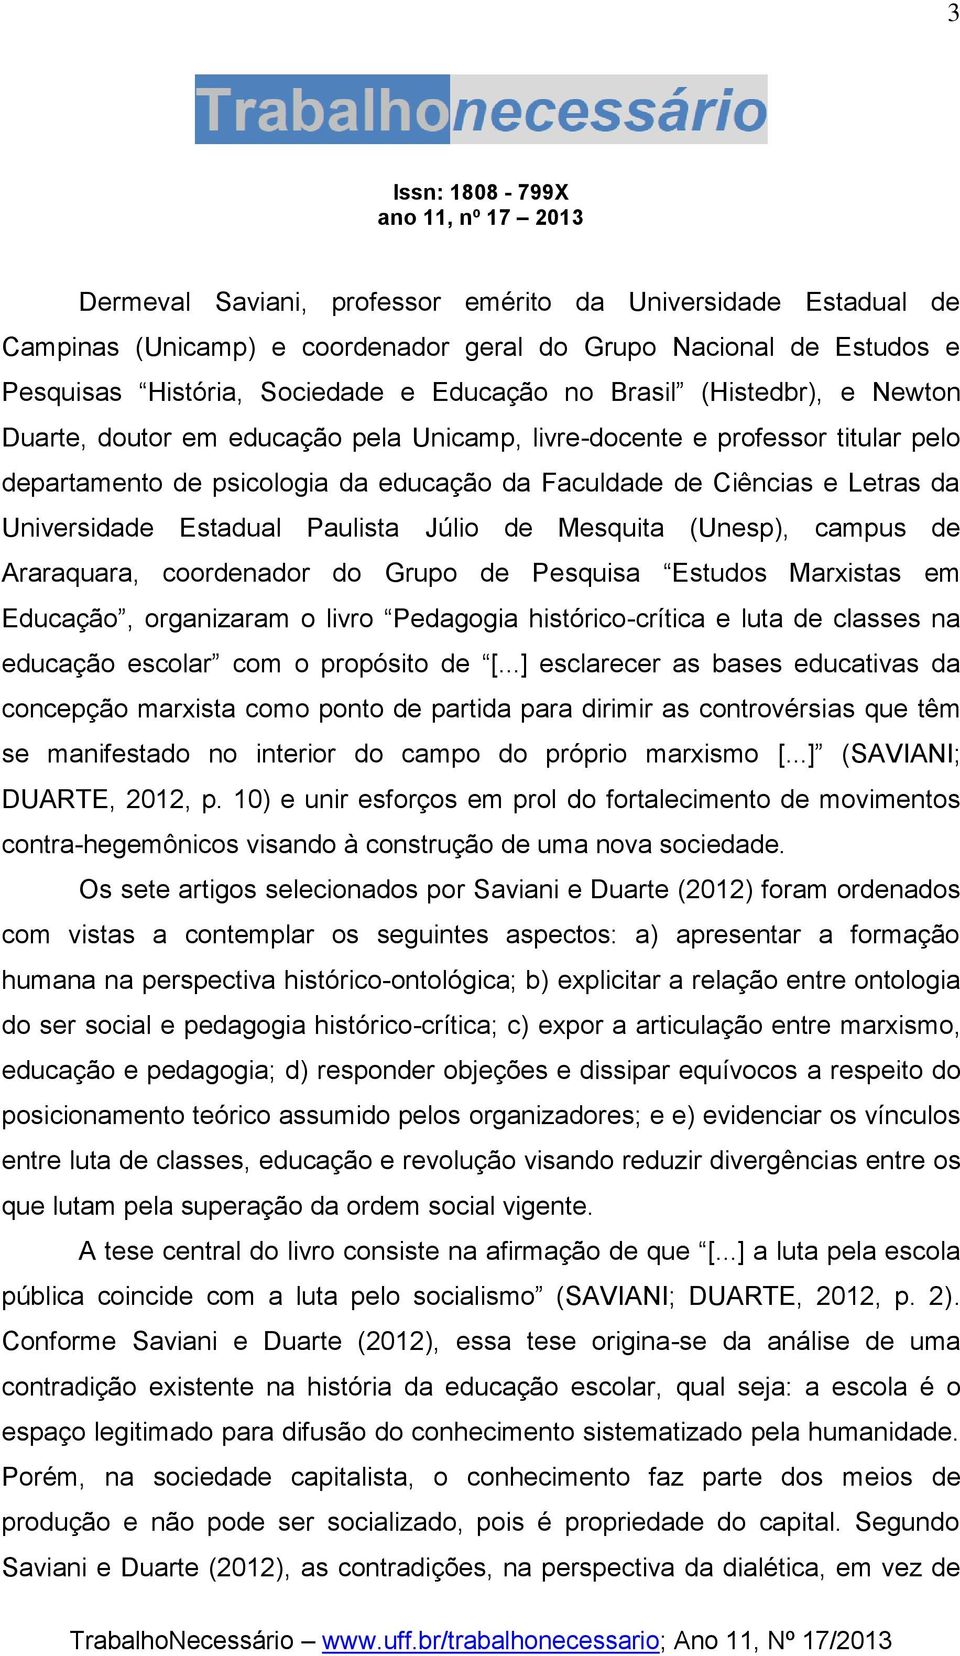 Júlio de Mesquita (Unesp), campus de Araraquara, coordenador do Grupo de Pesquisa Estudos Marxistas em Educação, organizaram o livro Pedagogia histórico-crítica e luta de classes na educação escolar